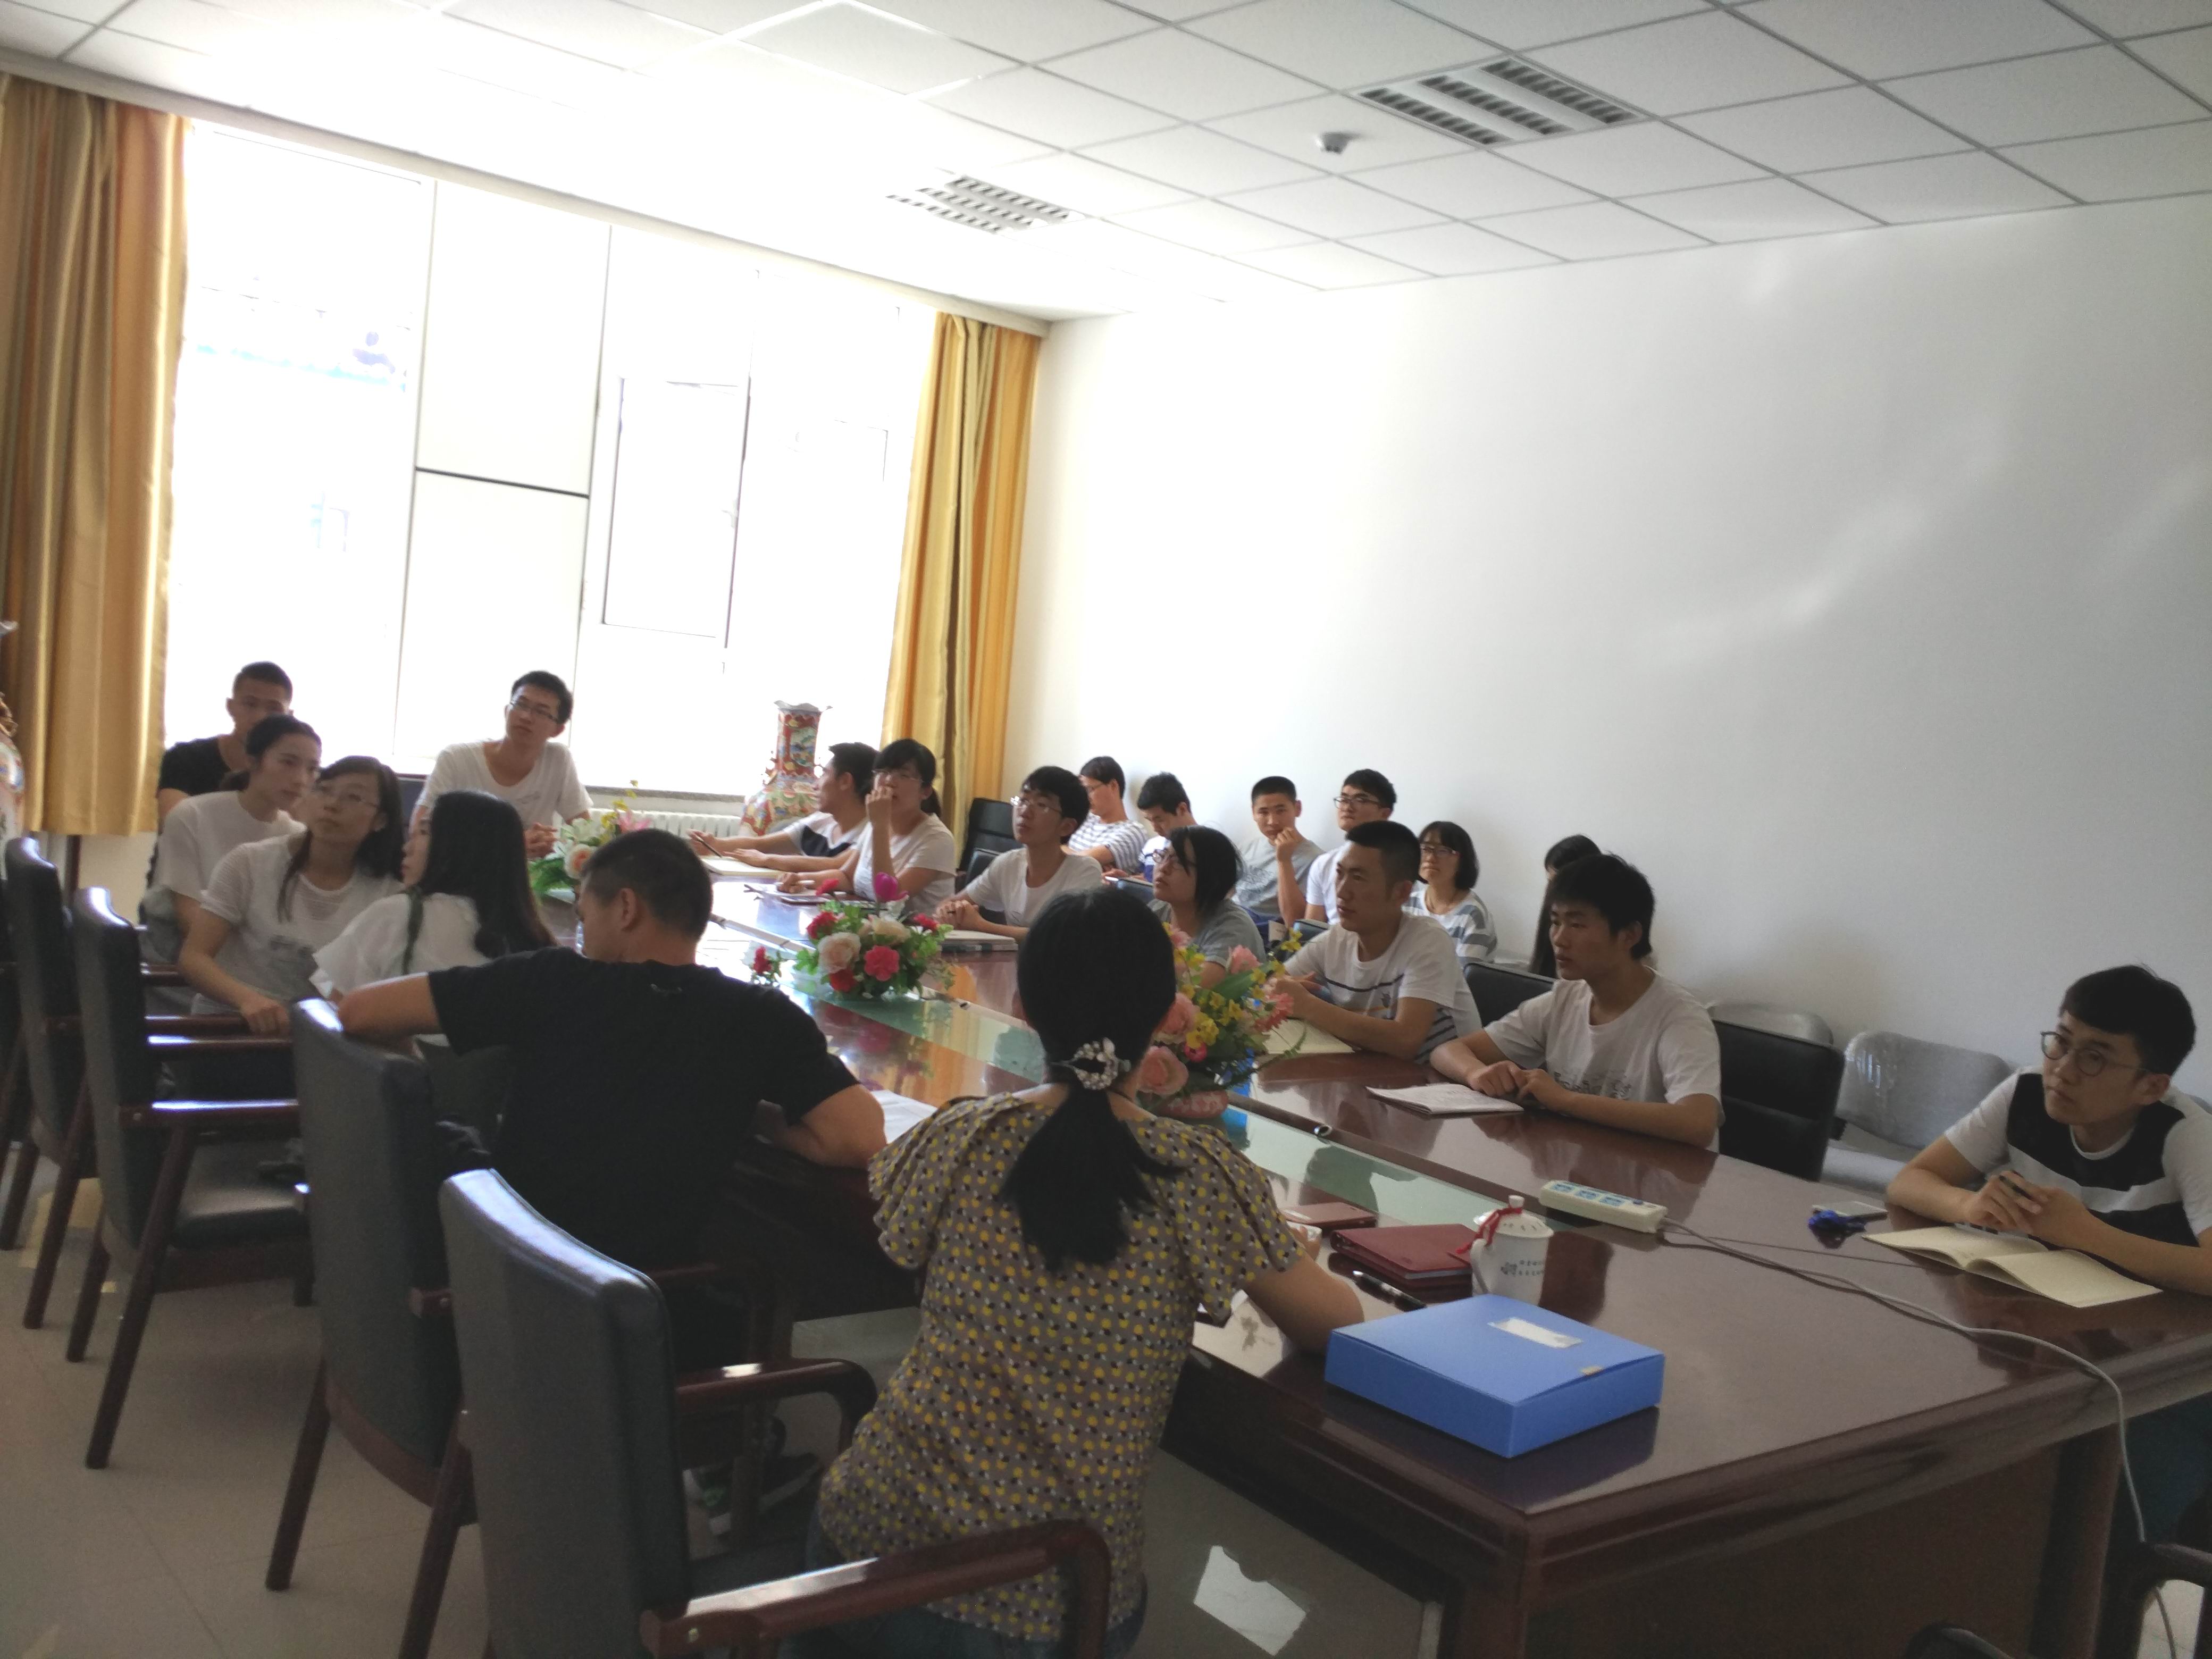 农学院组织图志班学生主动联系科学导师交流会